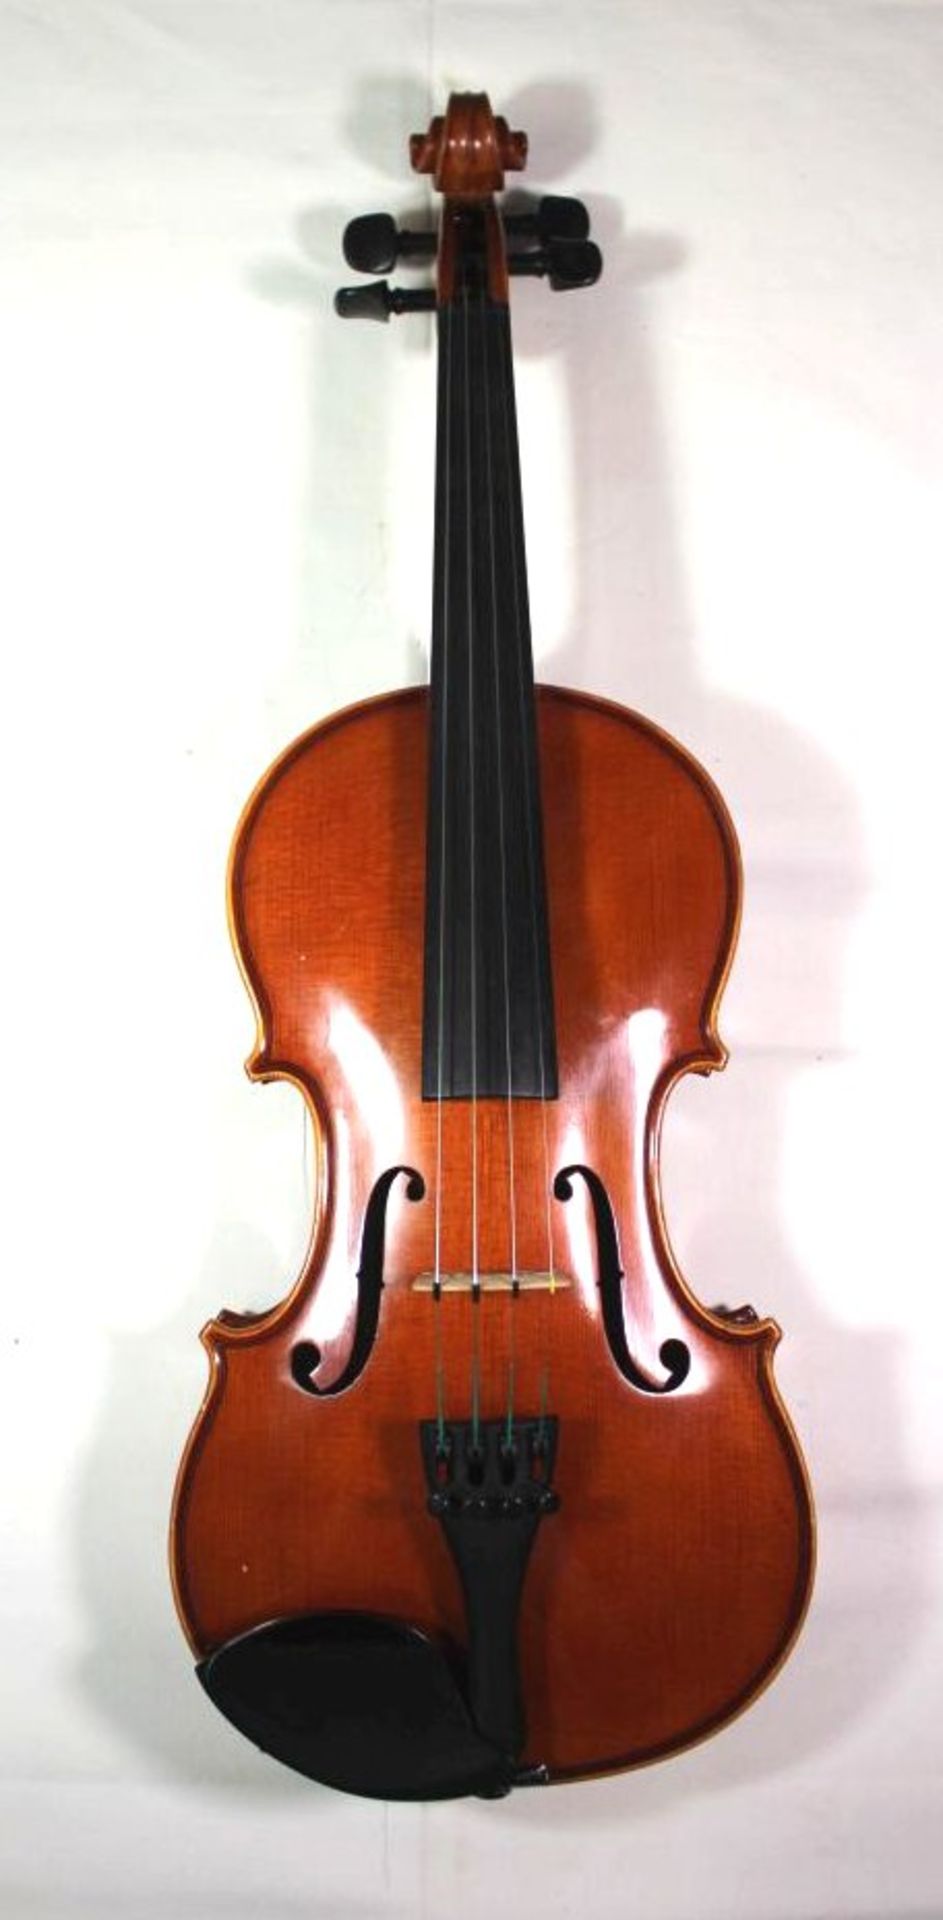 Geige, innen Klebeetikett "Intrumentenbau Mittenwald -Adorf", guter Zustand, anbei Bogen, L-57cm, in - Bild 2 aus 9